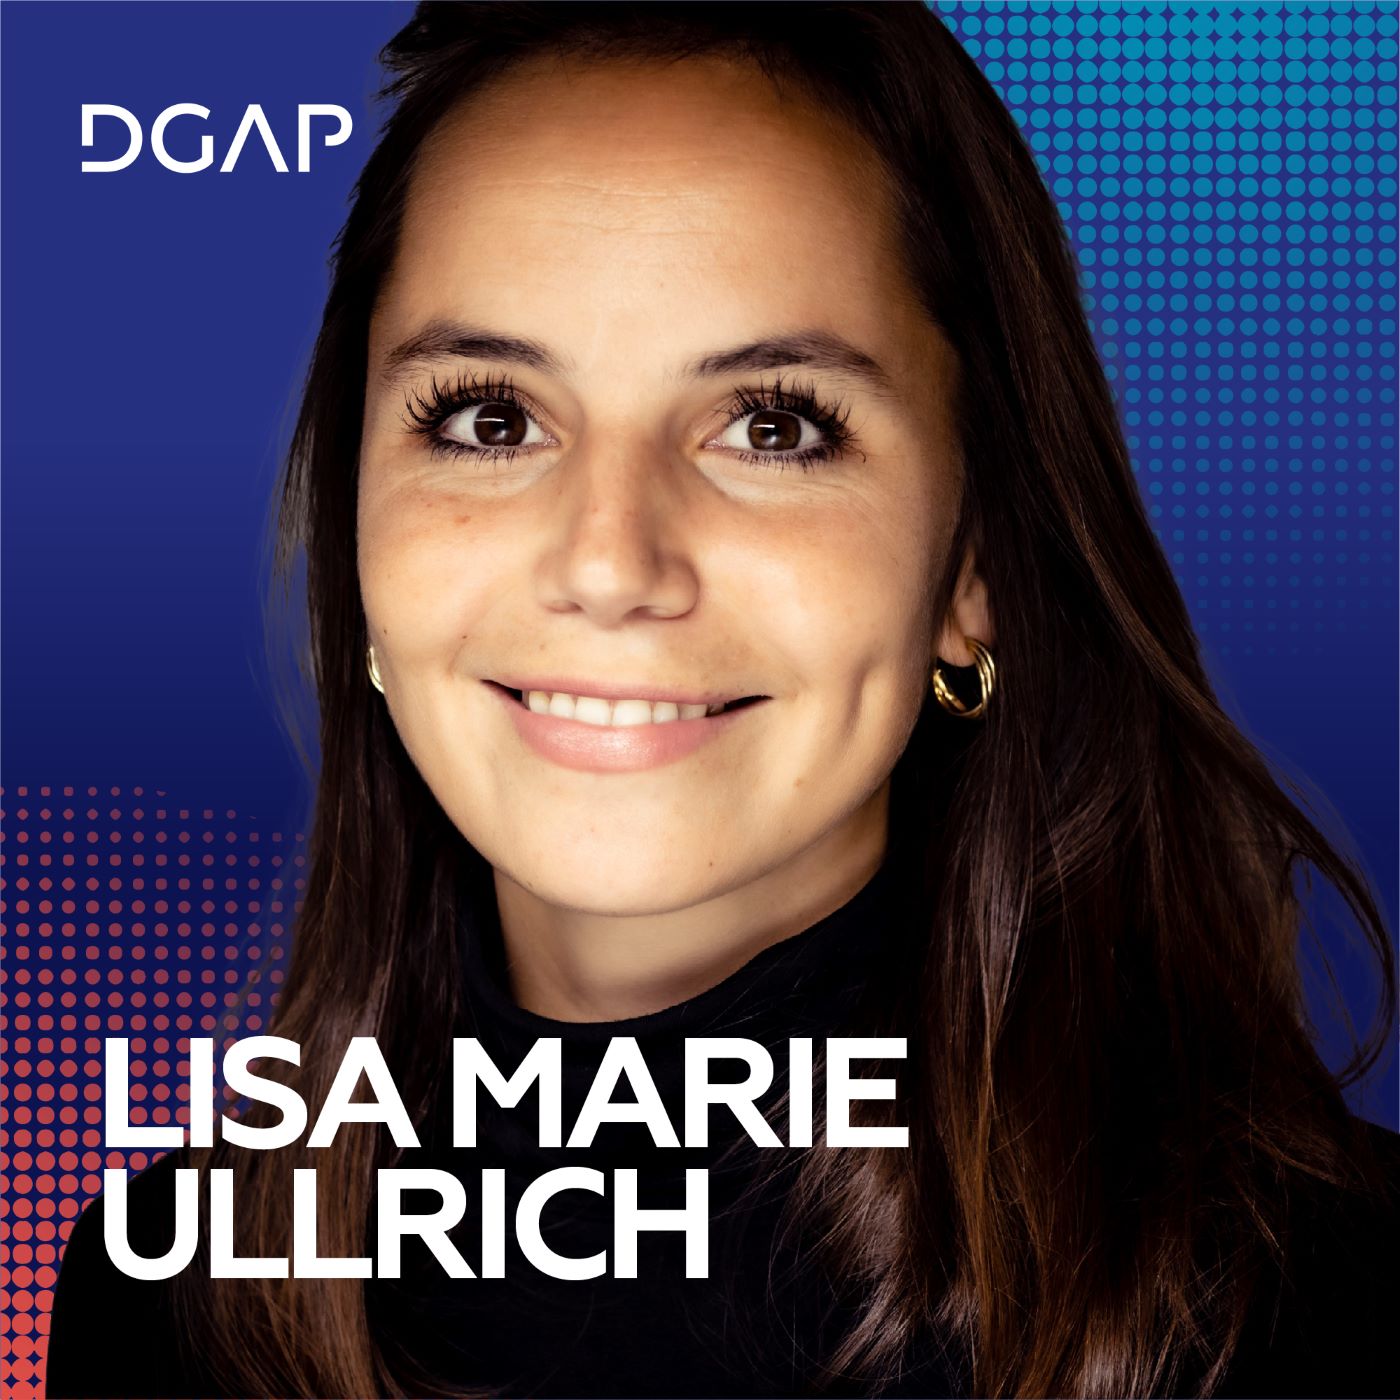 Wie plant man die Münchner Sicherheitskonferenz, Lisa Marie Ullrich?